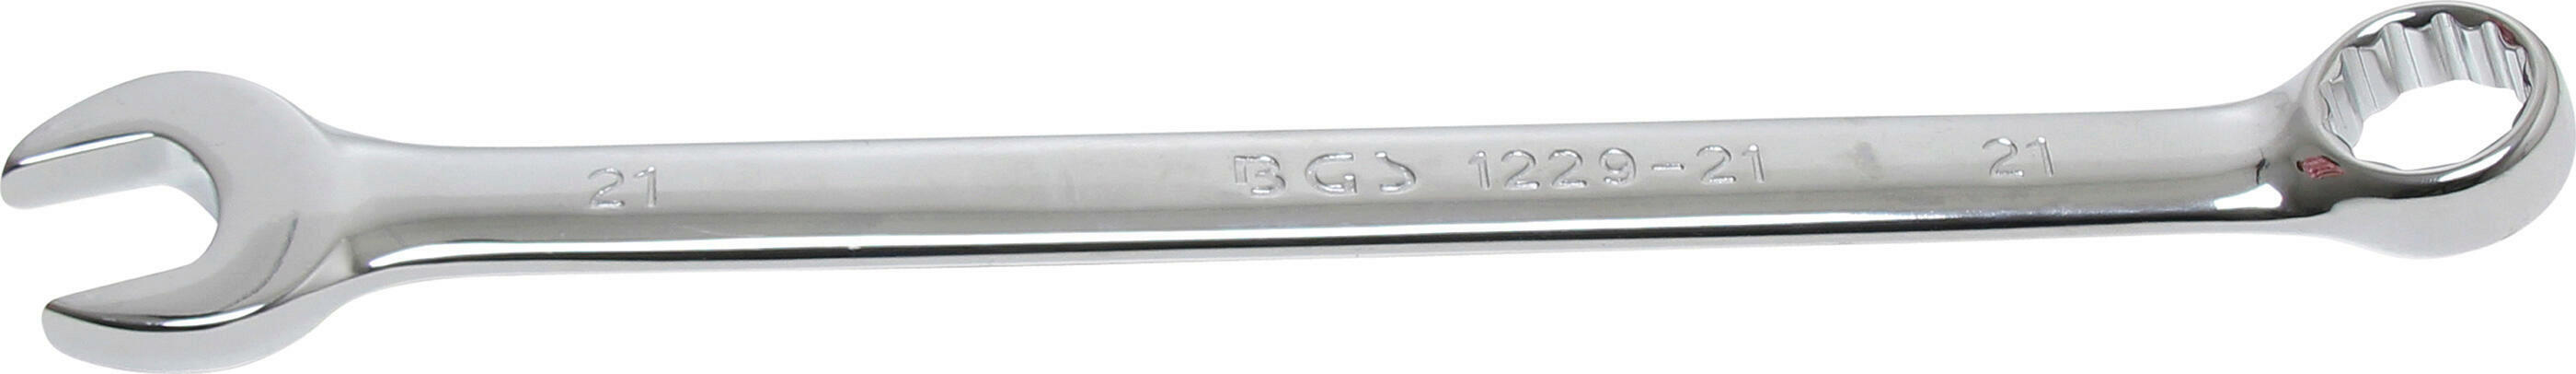 BGS Ring-/Gabelschlüssel